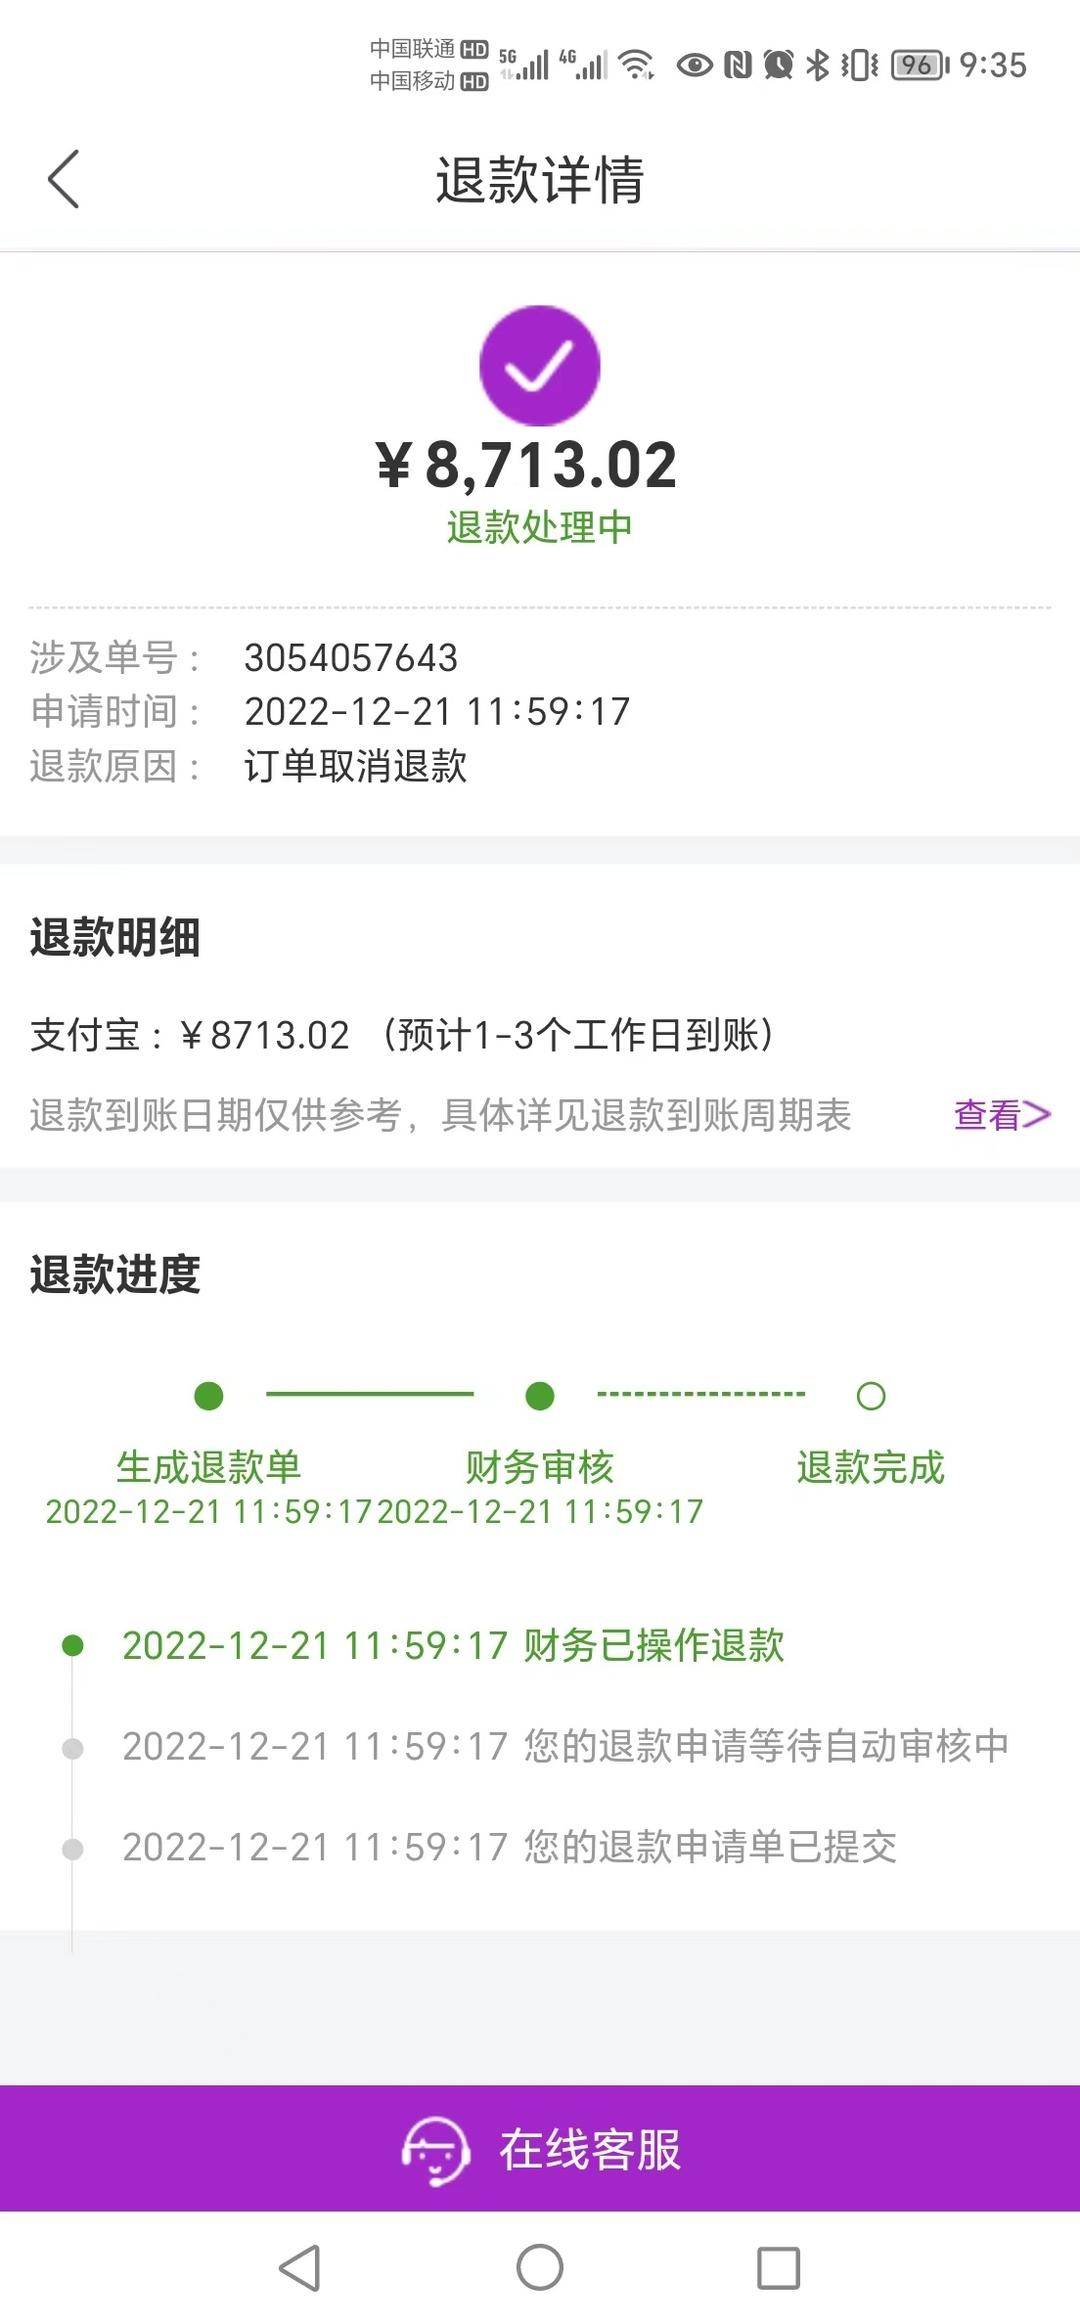 刘先生提供的App内退款明细（第二台空调）